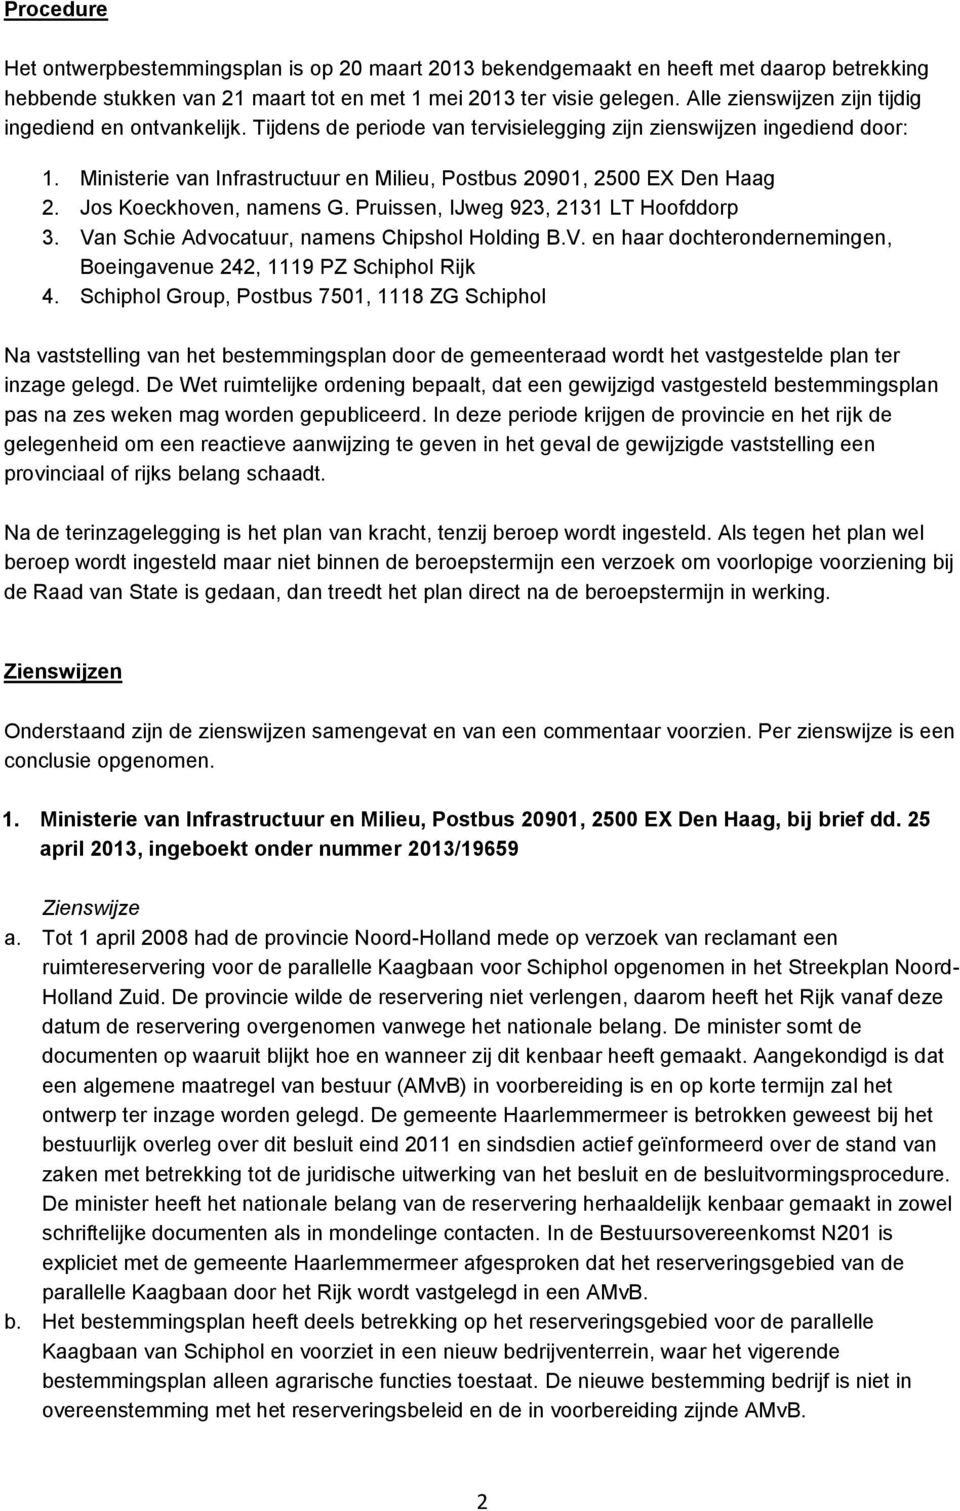 Ministerie van Infrastructuur en Milieu, Postbus 20901, 2500 EX Den Haag 2. Jos Koeckhoven, namens G. Pruissen, IJweg 923, 2131 LT Hoofddorp 3. Va